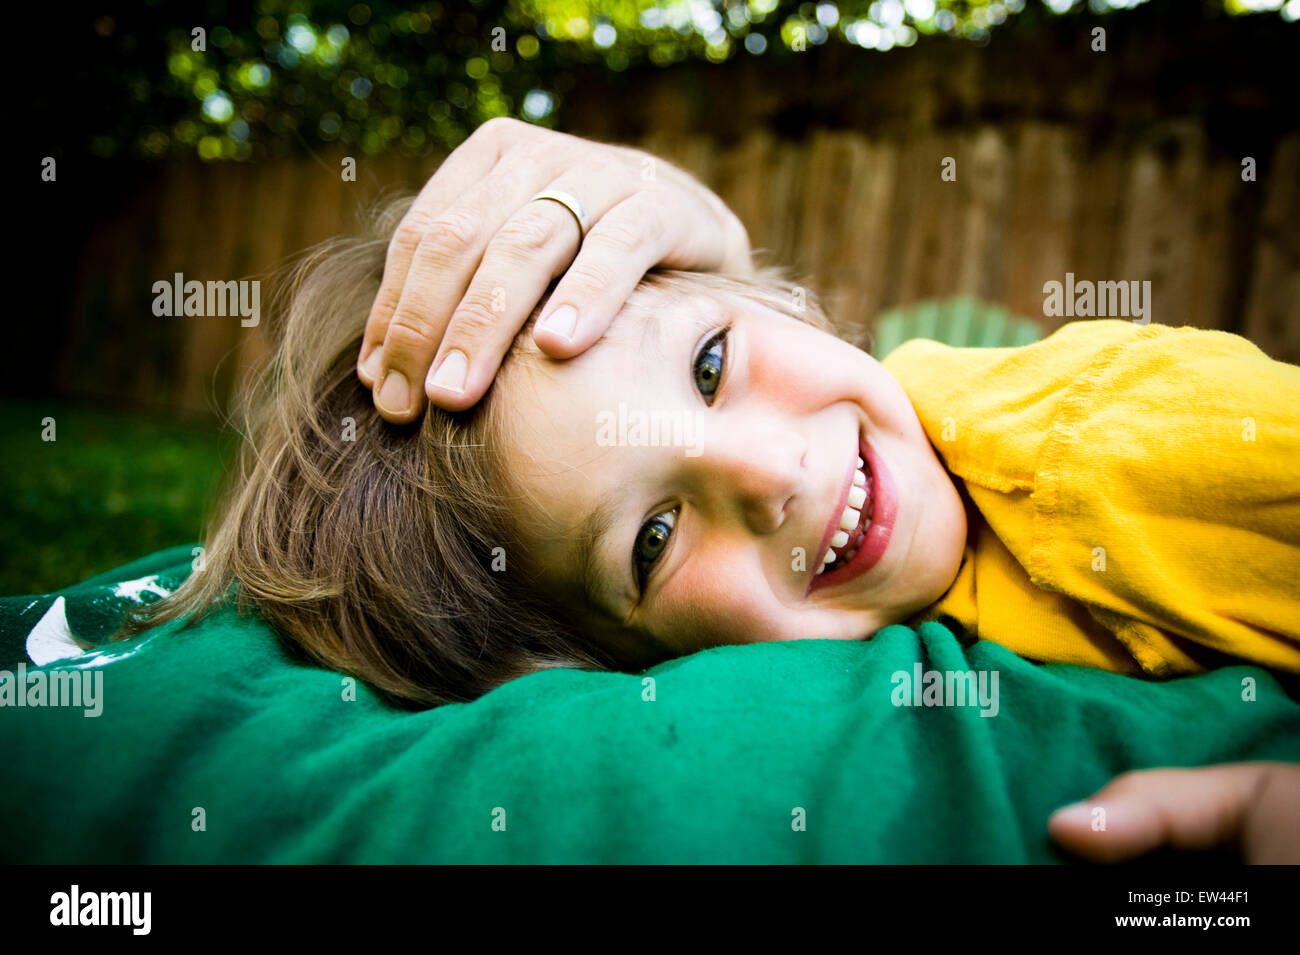 young cute boy playing in backyard Stock Photo